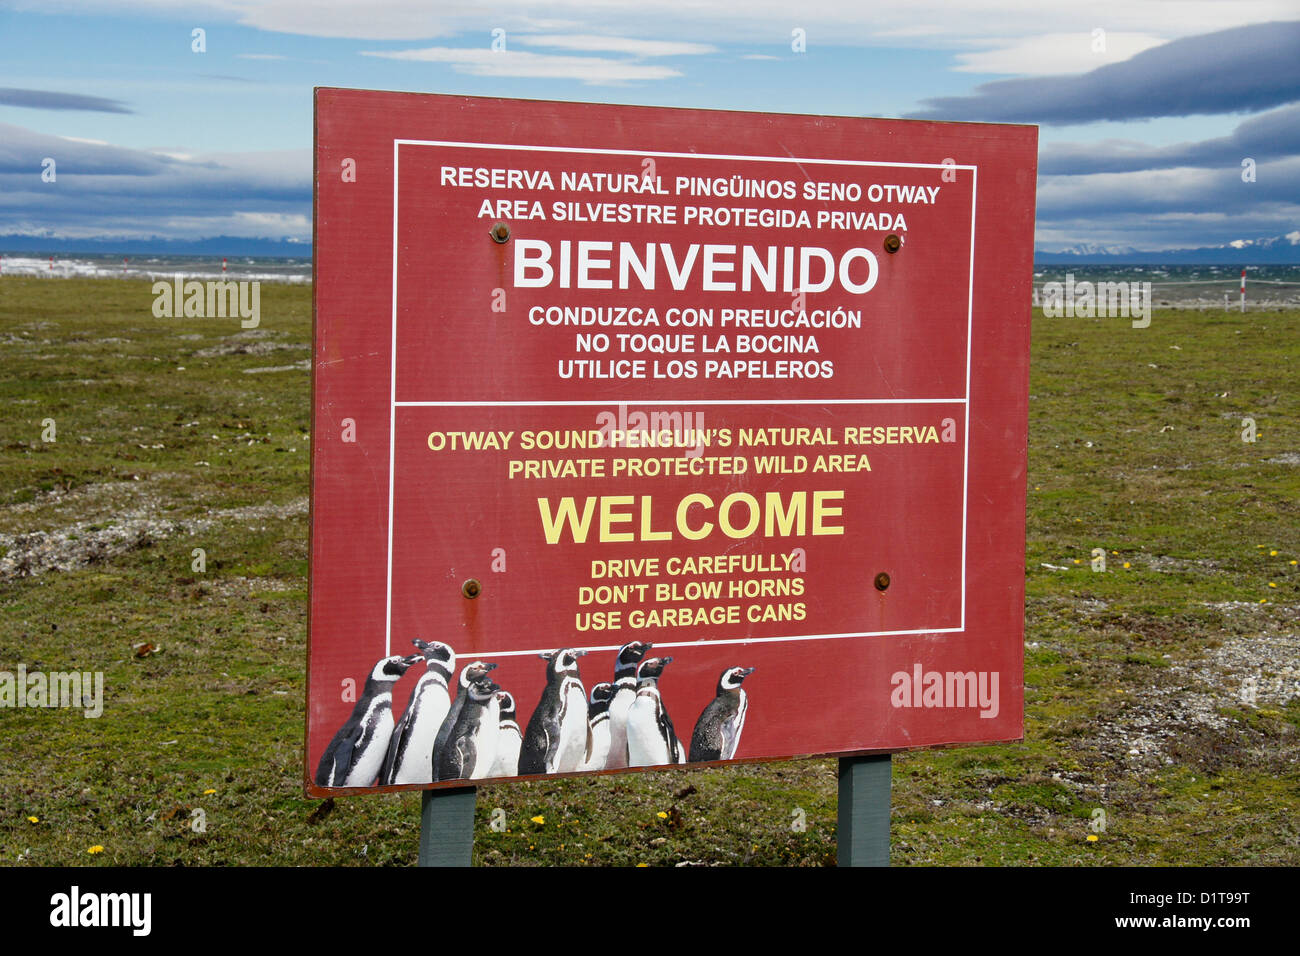 Inscrivez-vous à Seno Otway, réserve de pingouins de Patagonie, Chili Banque D'Images